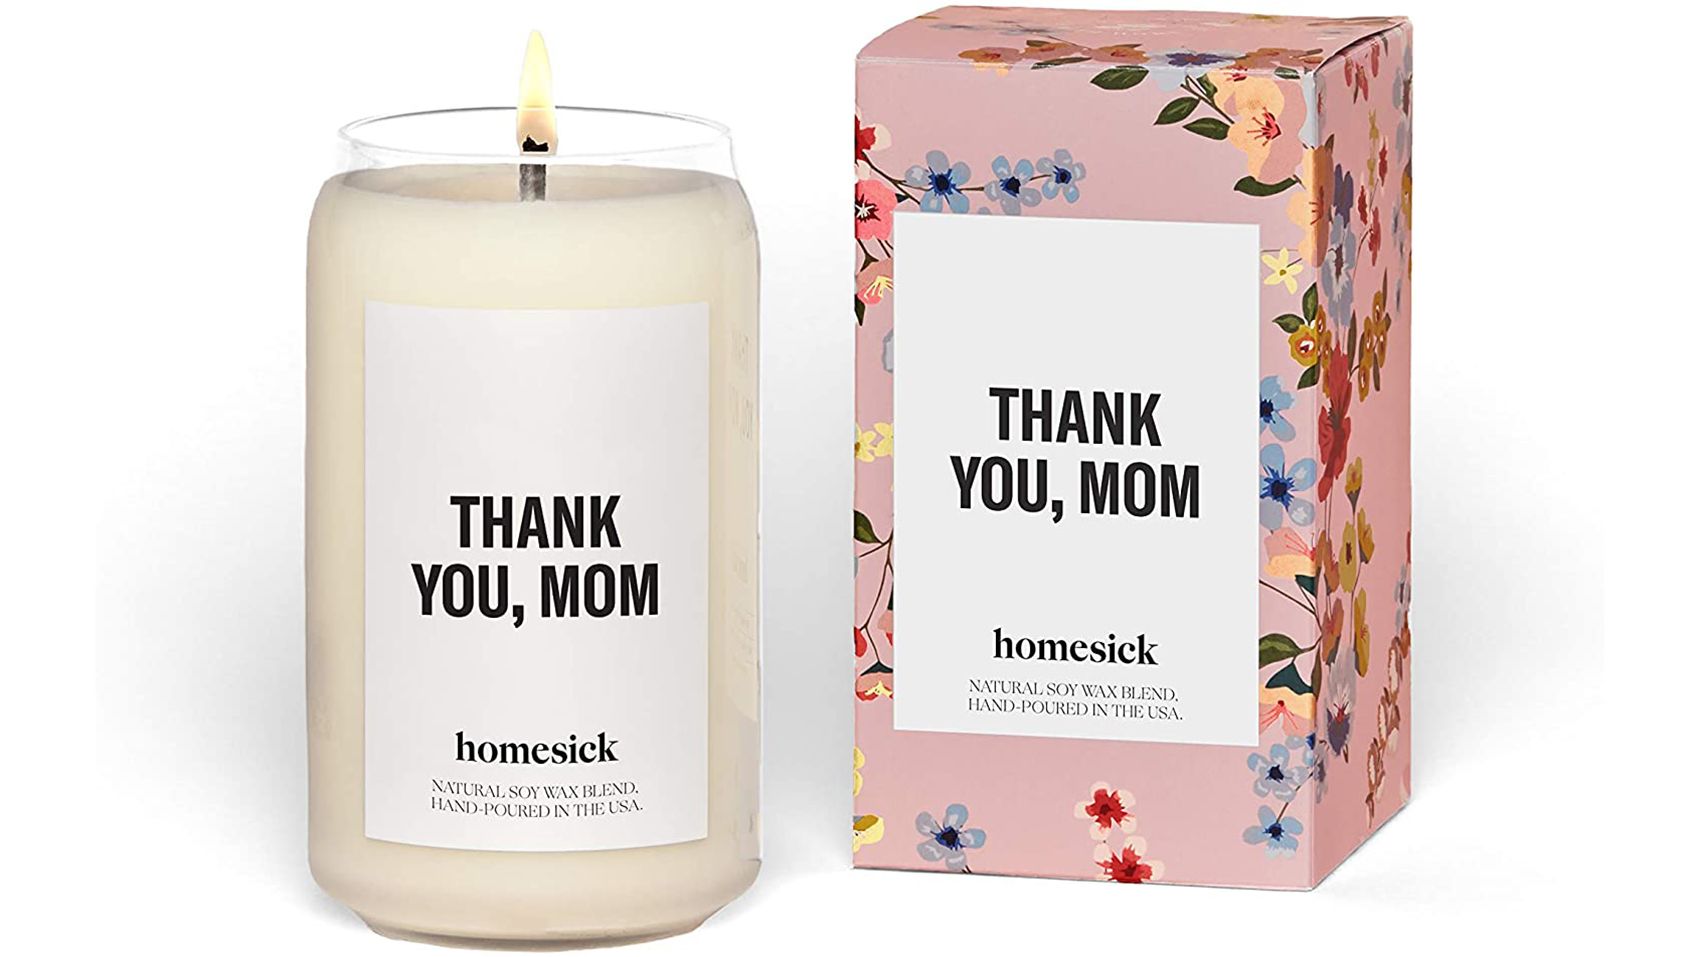 https://media.cnn.com/api/v1/images/stellar/prod/220415162104-lastminutemom-homesick-thank-you-mom-scented-candle.jpg?c=original